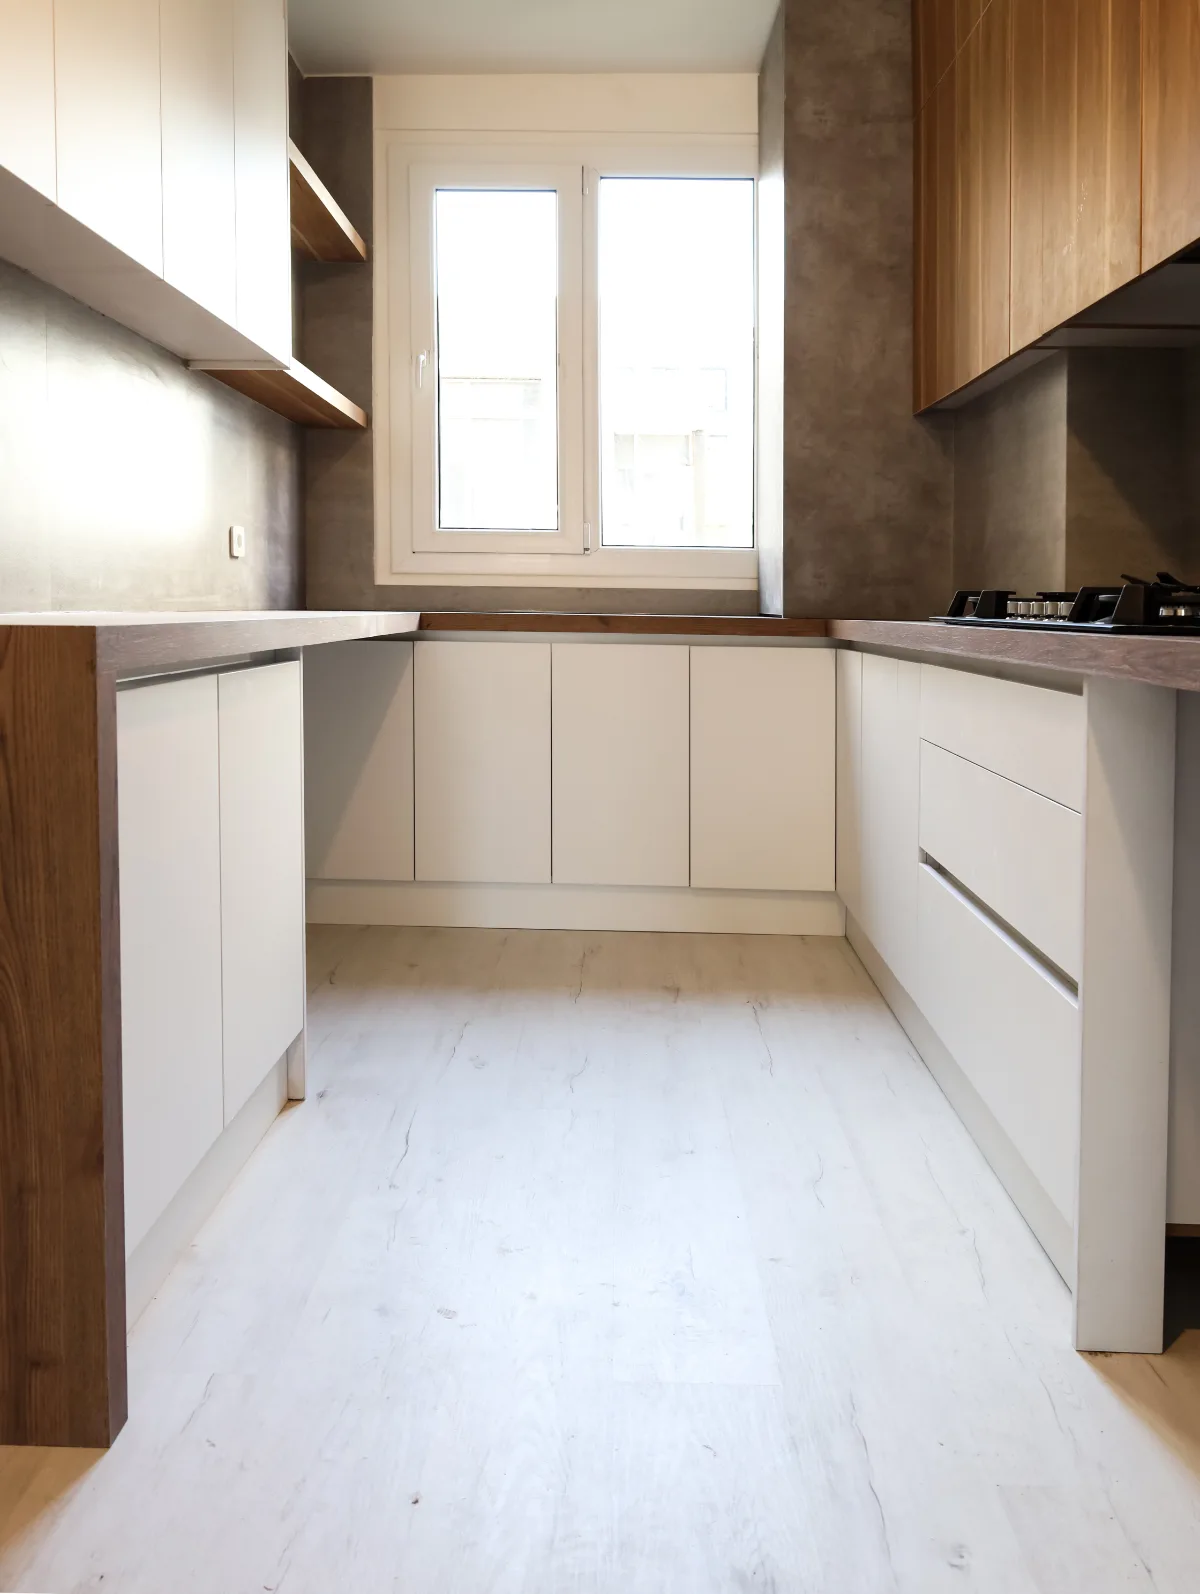 دکوراسیون آشپزخانه ارزان با کابینت هایگلاس و ام دی اف با قفسه و شلف